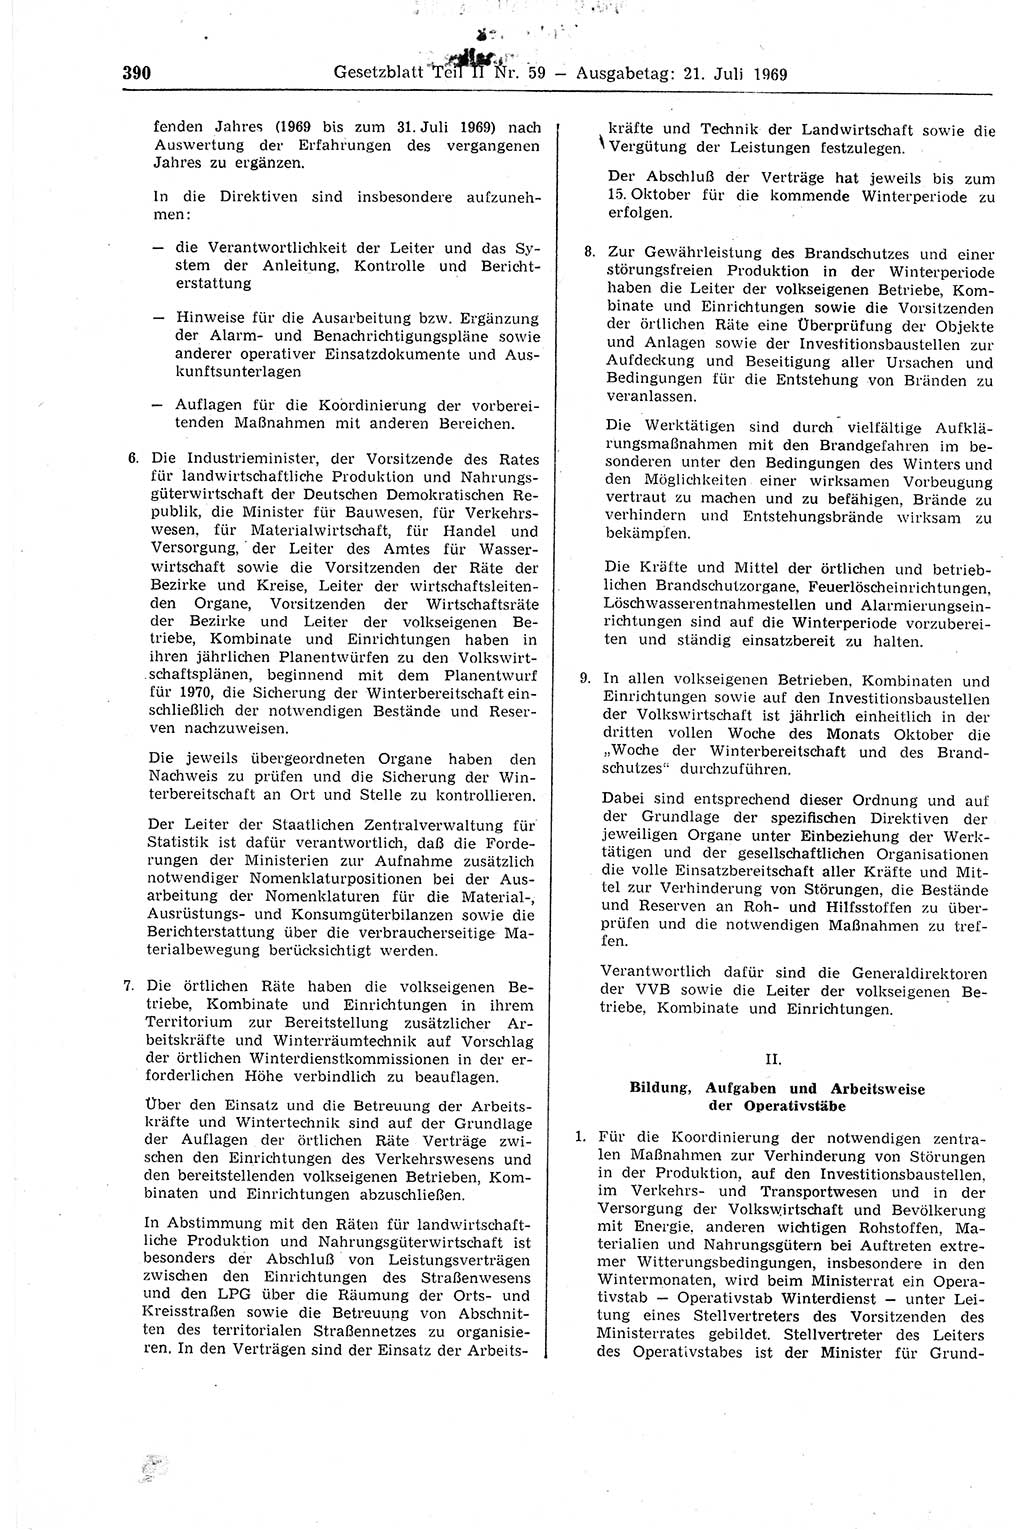 Gesetzblatt (GBl.) der Deutschen Demokratischen Republik (DDR) Teil ⅠⅠ 1969, Seite 390 (GBl. DDR ⅠⅠ 1969, S. 390)